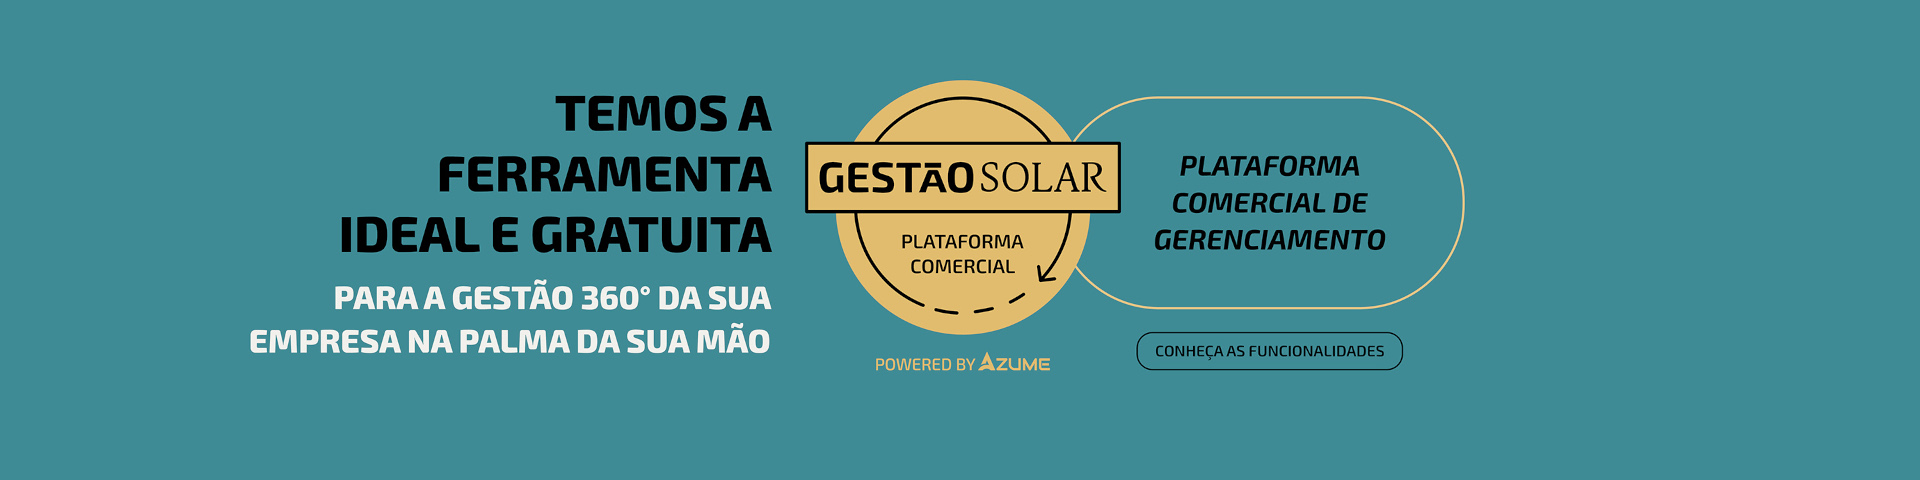 Gestão Solar Plataforma Comercial Powered by Azume